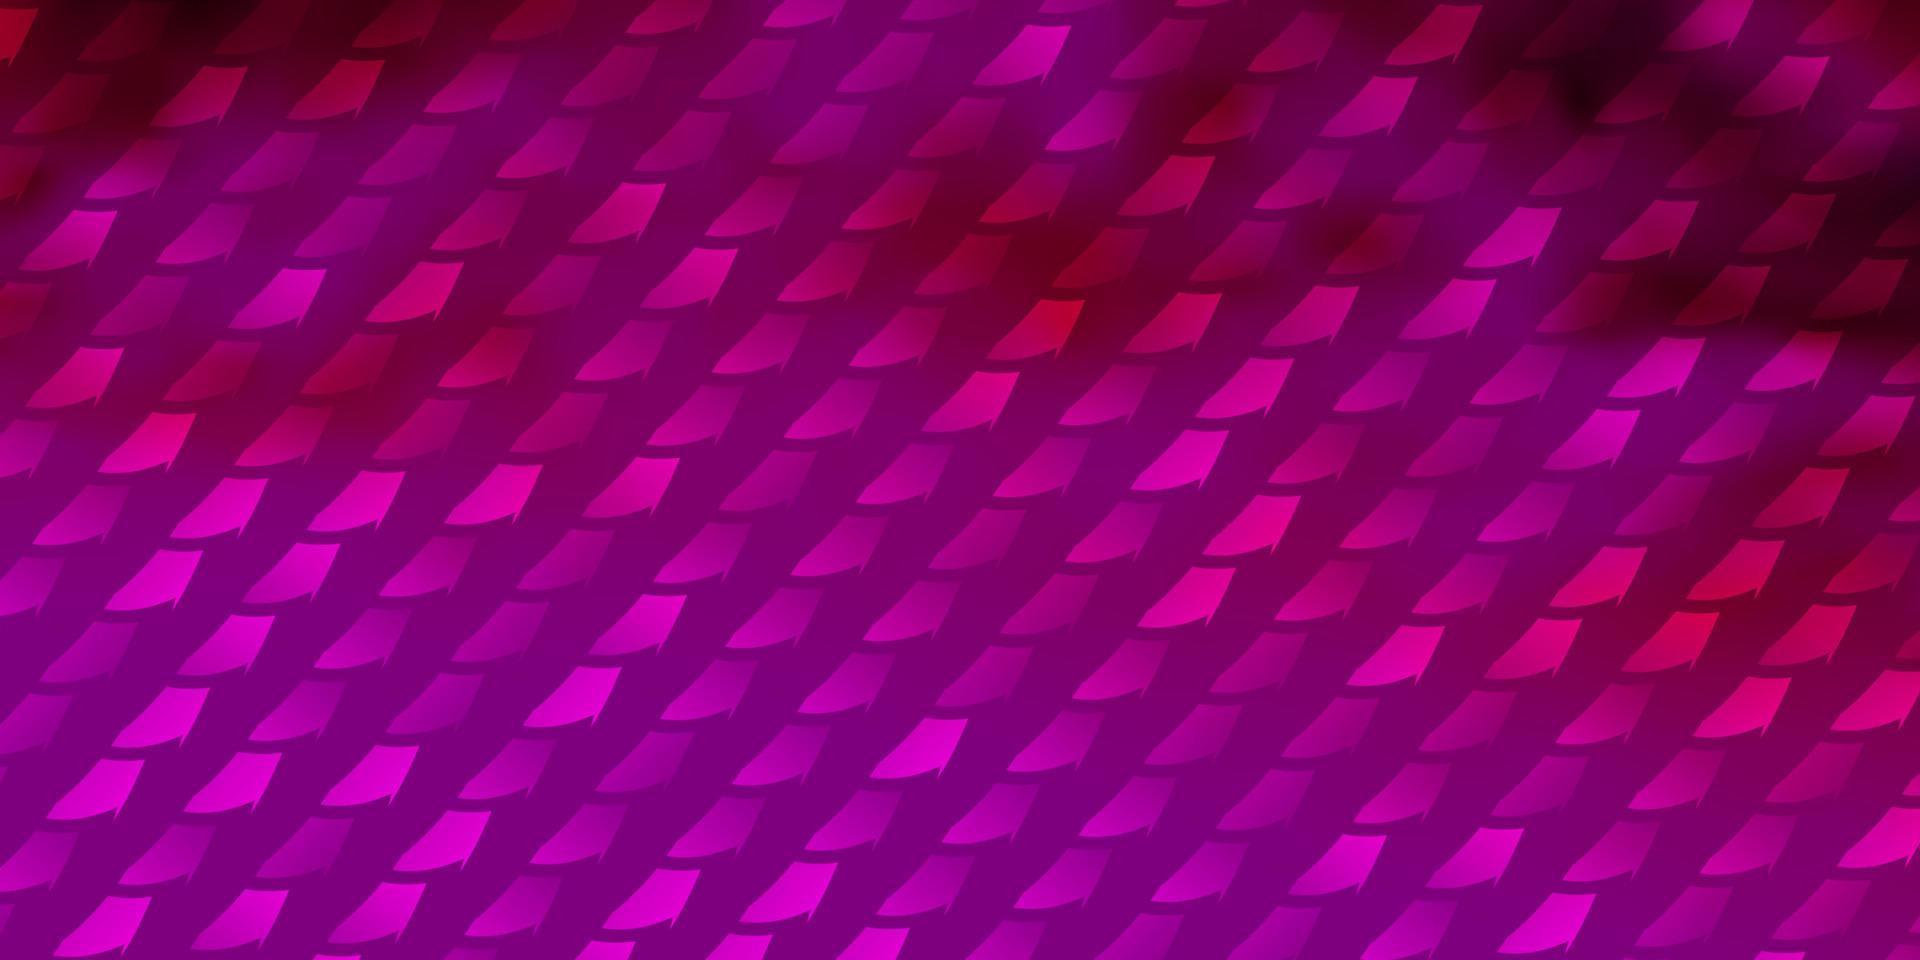 trama vettoriale rosa chiaro in stile rettangolare.